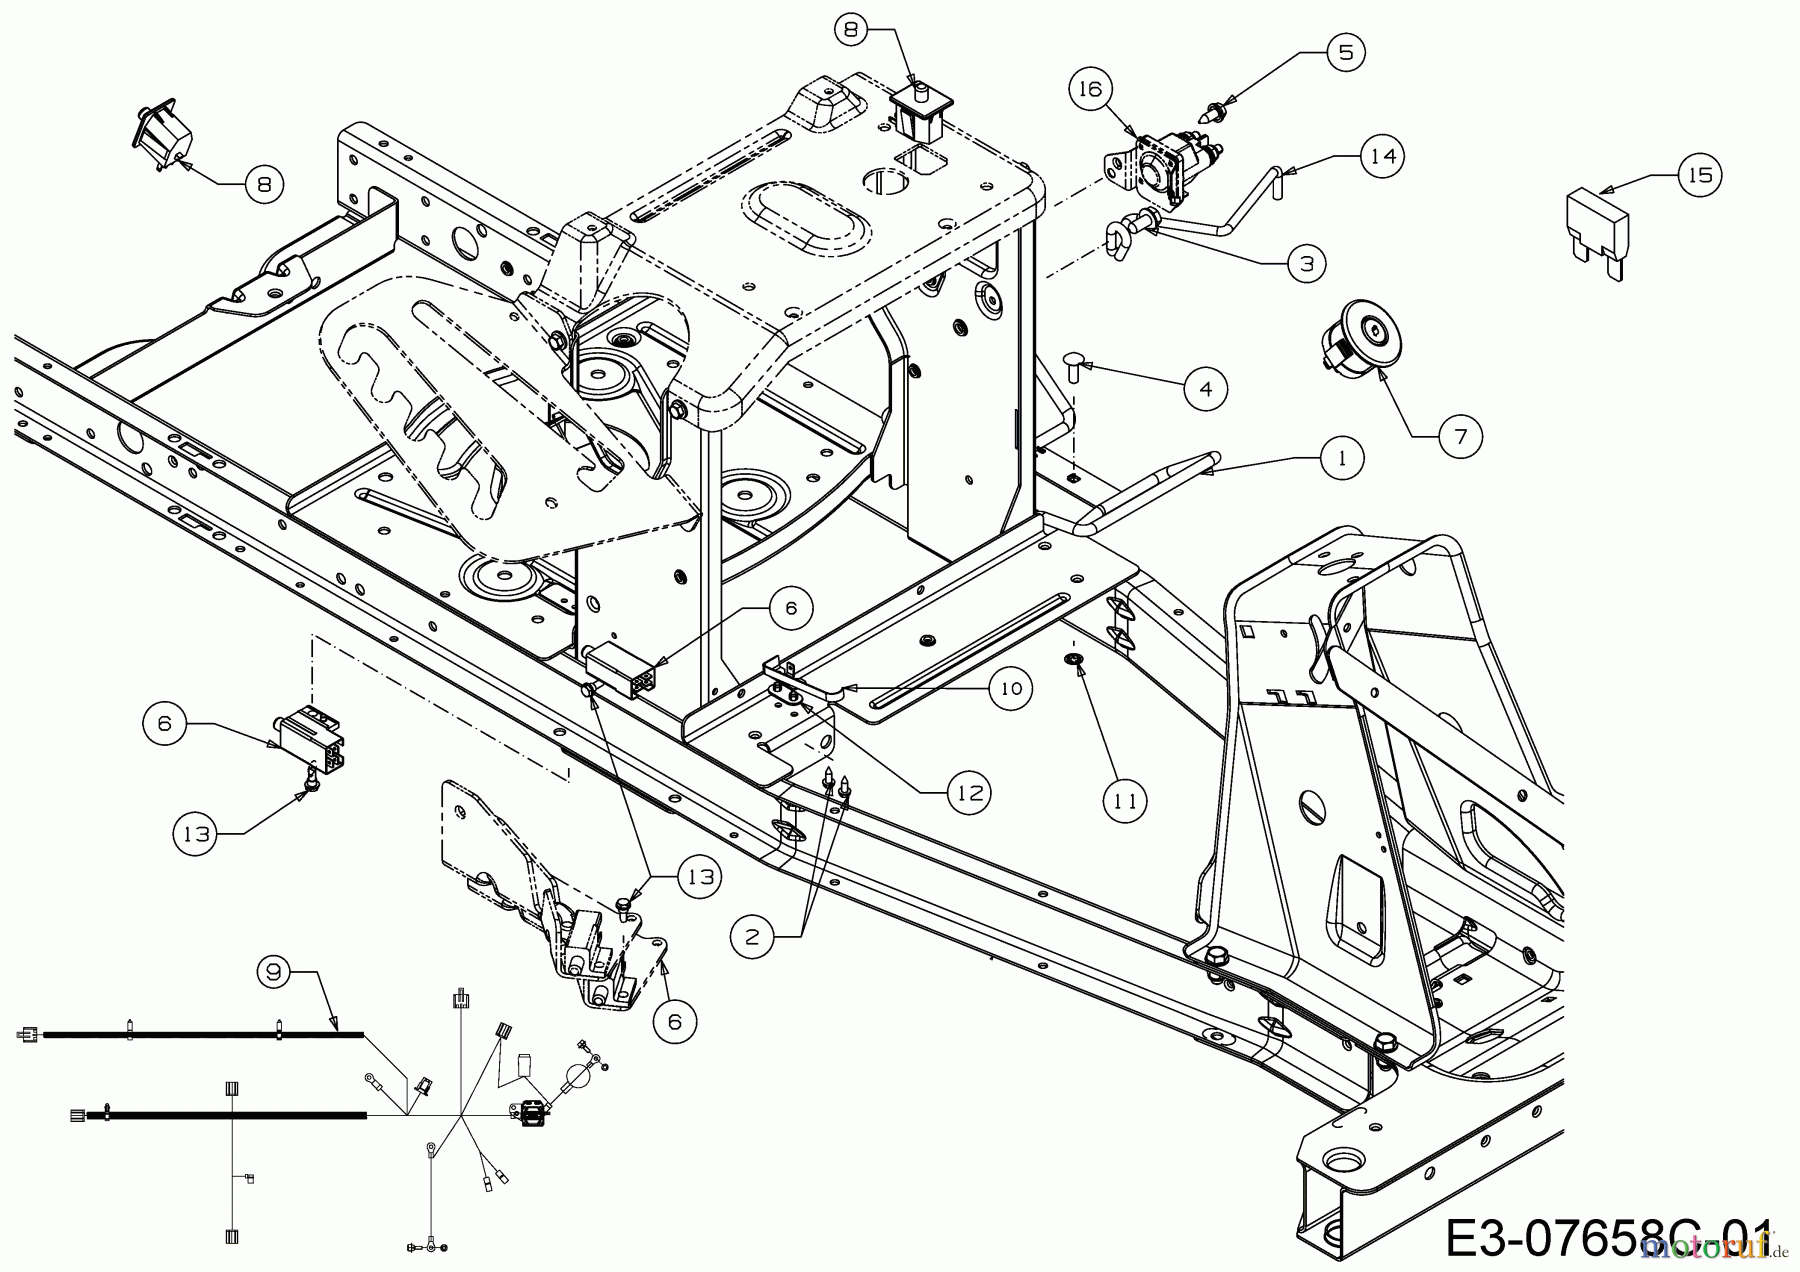  WOLF-Garten Expert Rasentraktoren Scooter Pro 13B226HD650  (2017) Elektroteile